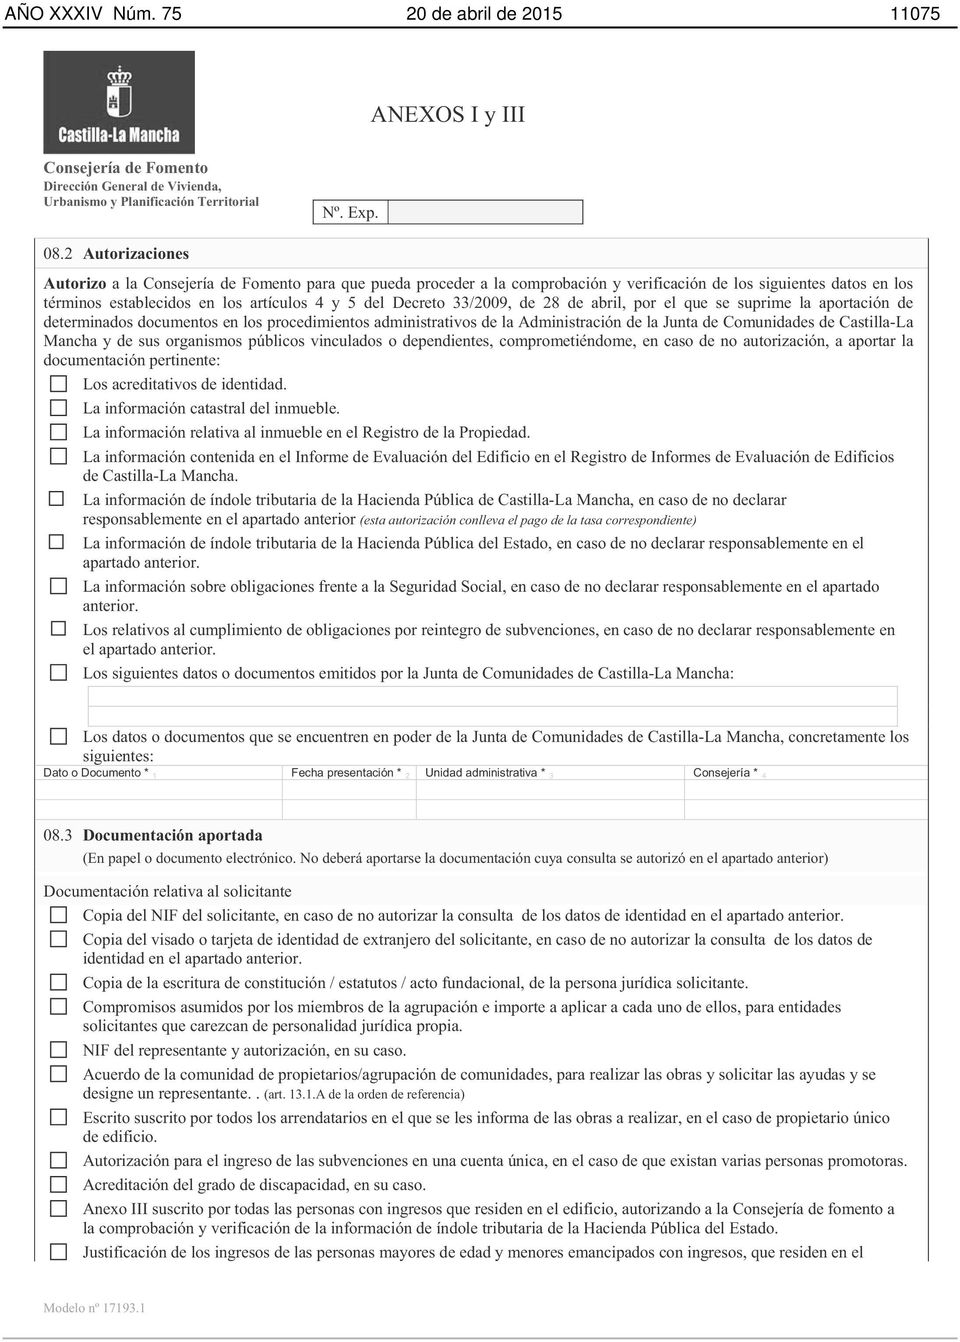 abril, por el que se suprime la aportación de determinados documentos en los procedimientos administrativos de la Administración de la Junta de Comunidades de Castilla-La Mancha y de sus organismos